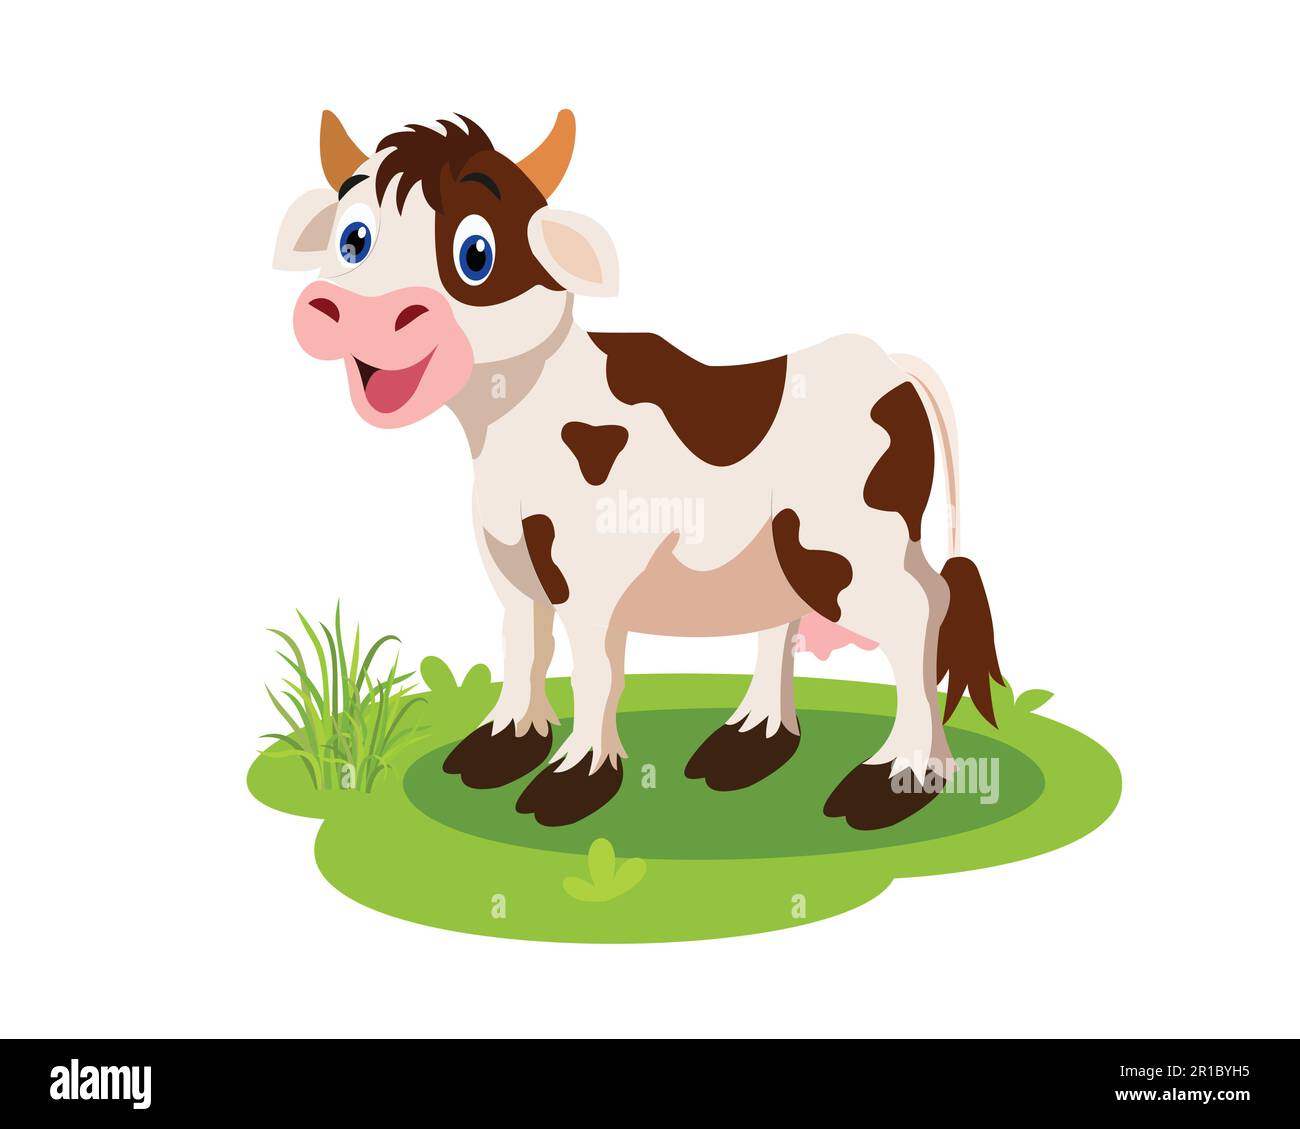 Süße Cartoon-Kuh, die auf Gras steht. Handgezeichnetes Vektorbild der Kuh auf weißem Hintergrund. Isolieren Sie das Bild vom Hintergrund und verwenden Sie es für Kinder alphat Stock Vektor